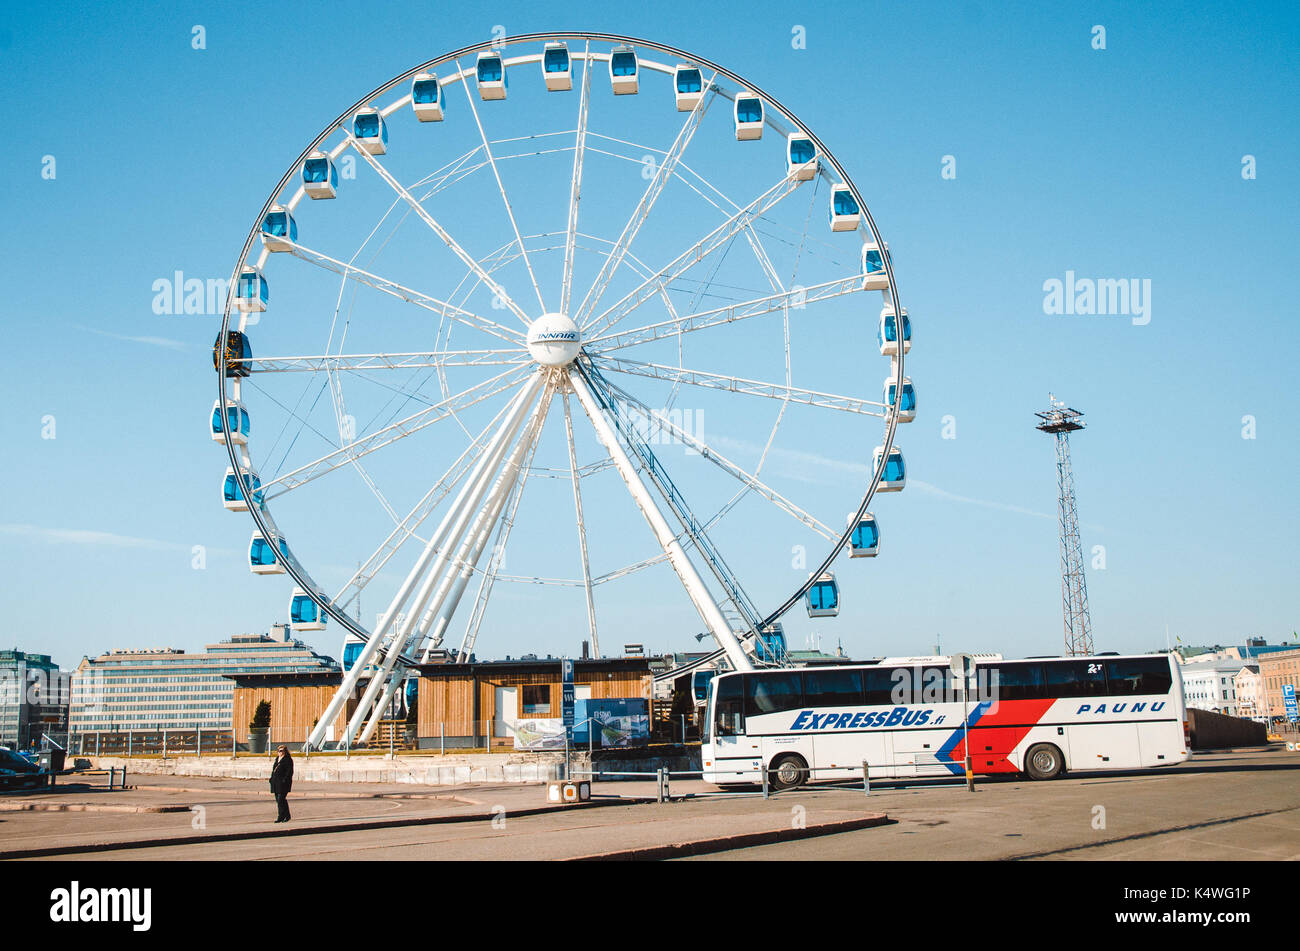 Helsinki, Finlandia - Marzo 17, 2015: el autobús de pasajeros se sitúa delante de la noria en el puerto de Helsinki, Finlandia. Foto de stock